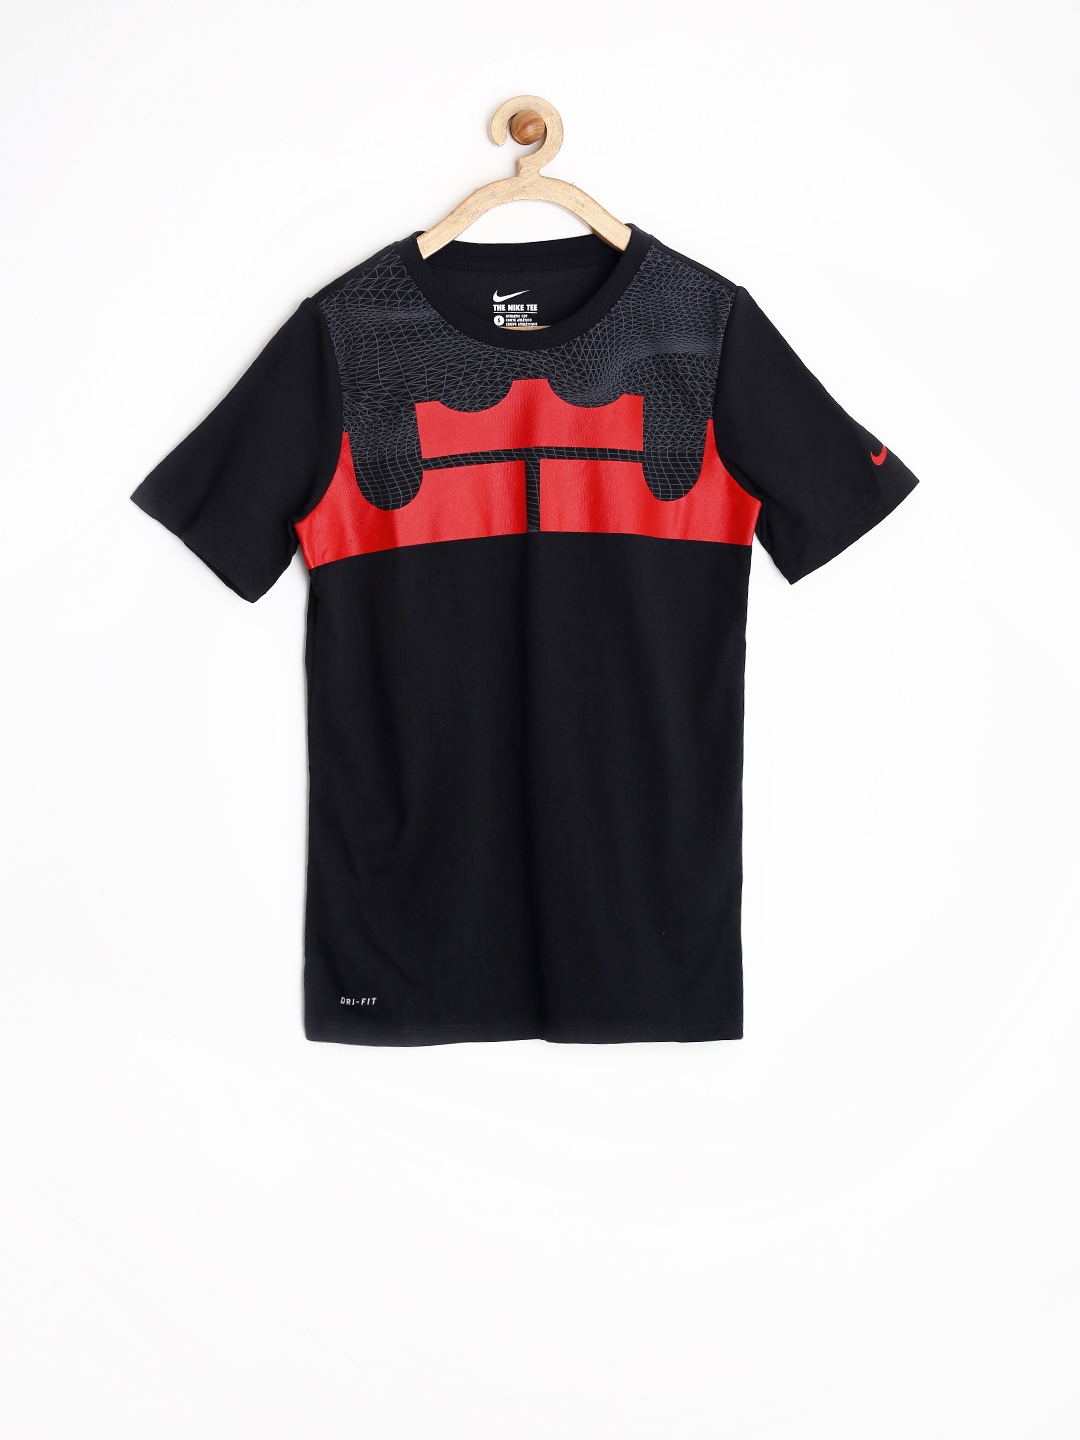 Buy Nike Boys Black Printed Basketball T Shirt - Tshirts for Boys ...